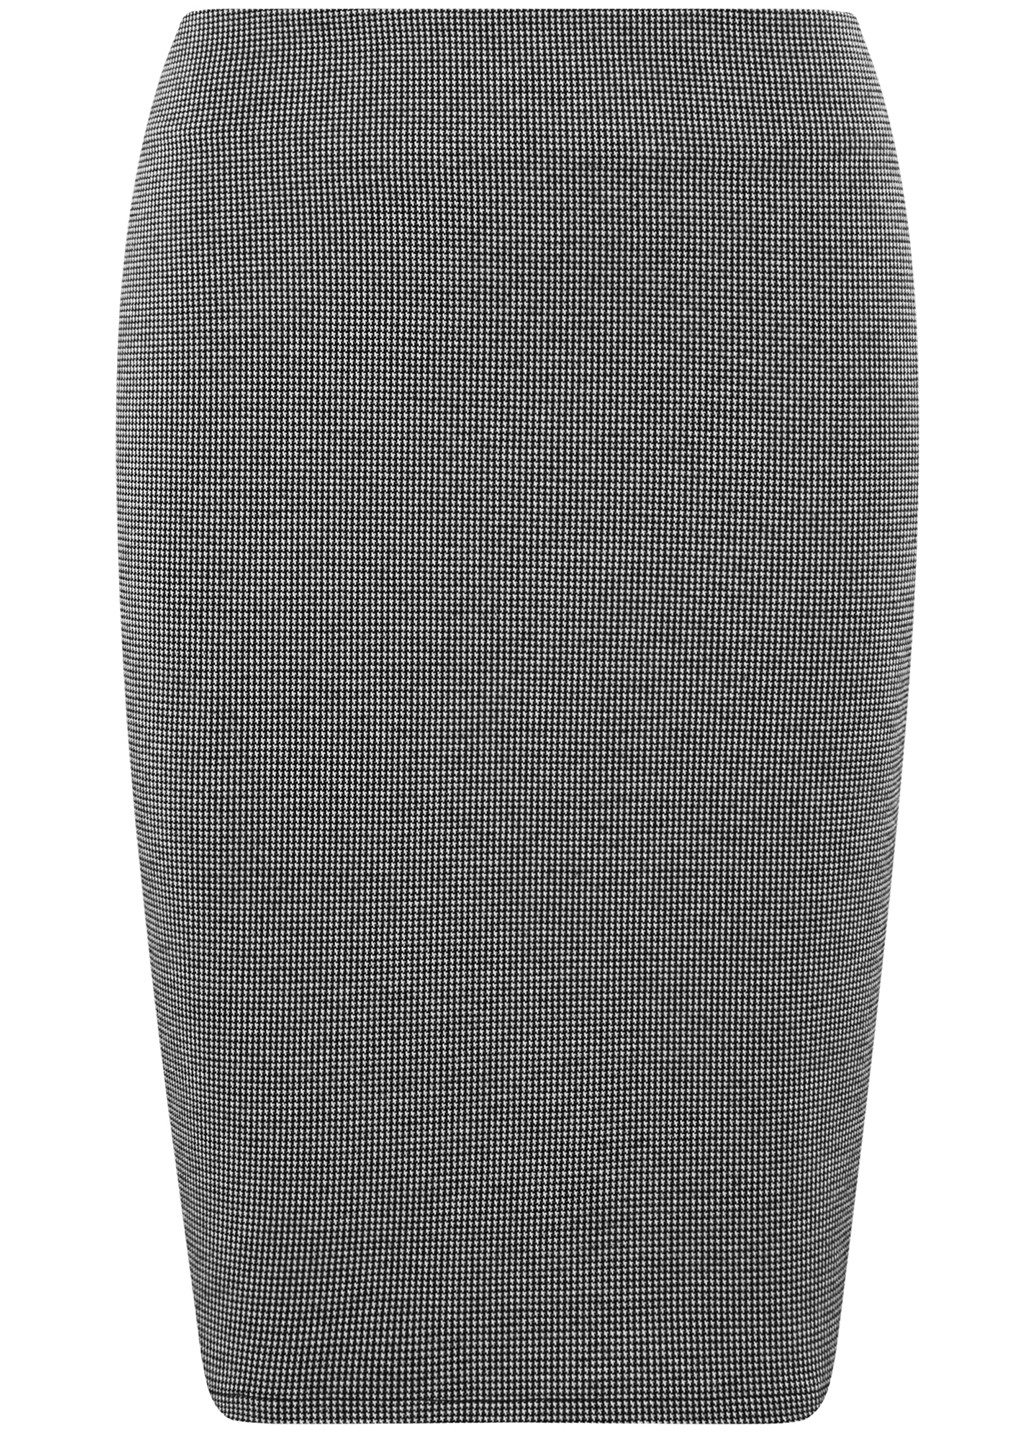 Черная офисная с геометрическим узором юбка Oodji мини